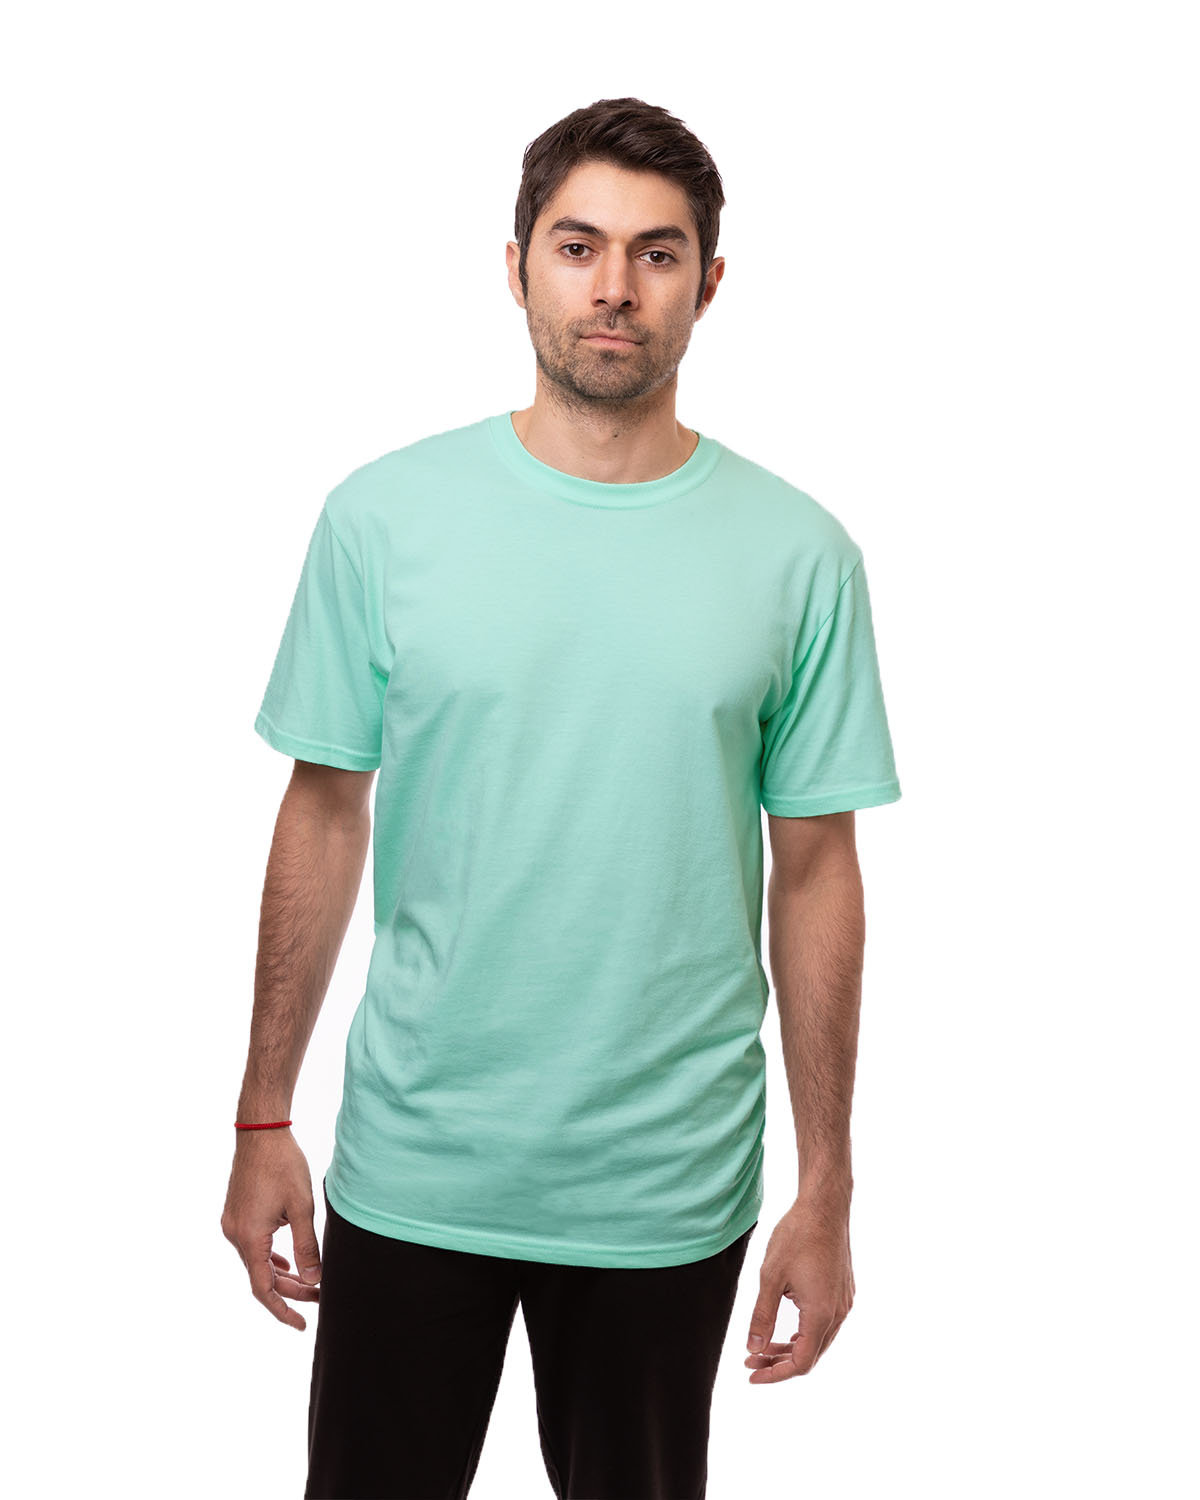 econscious Unisex 100% Organic Cotton Classic Short-Sleeve T-Shirt  SUNWASHED MINT 